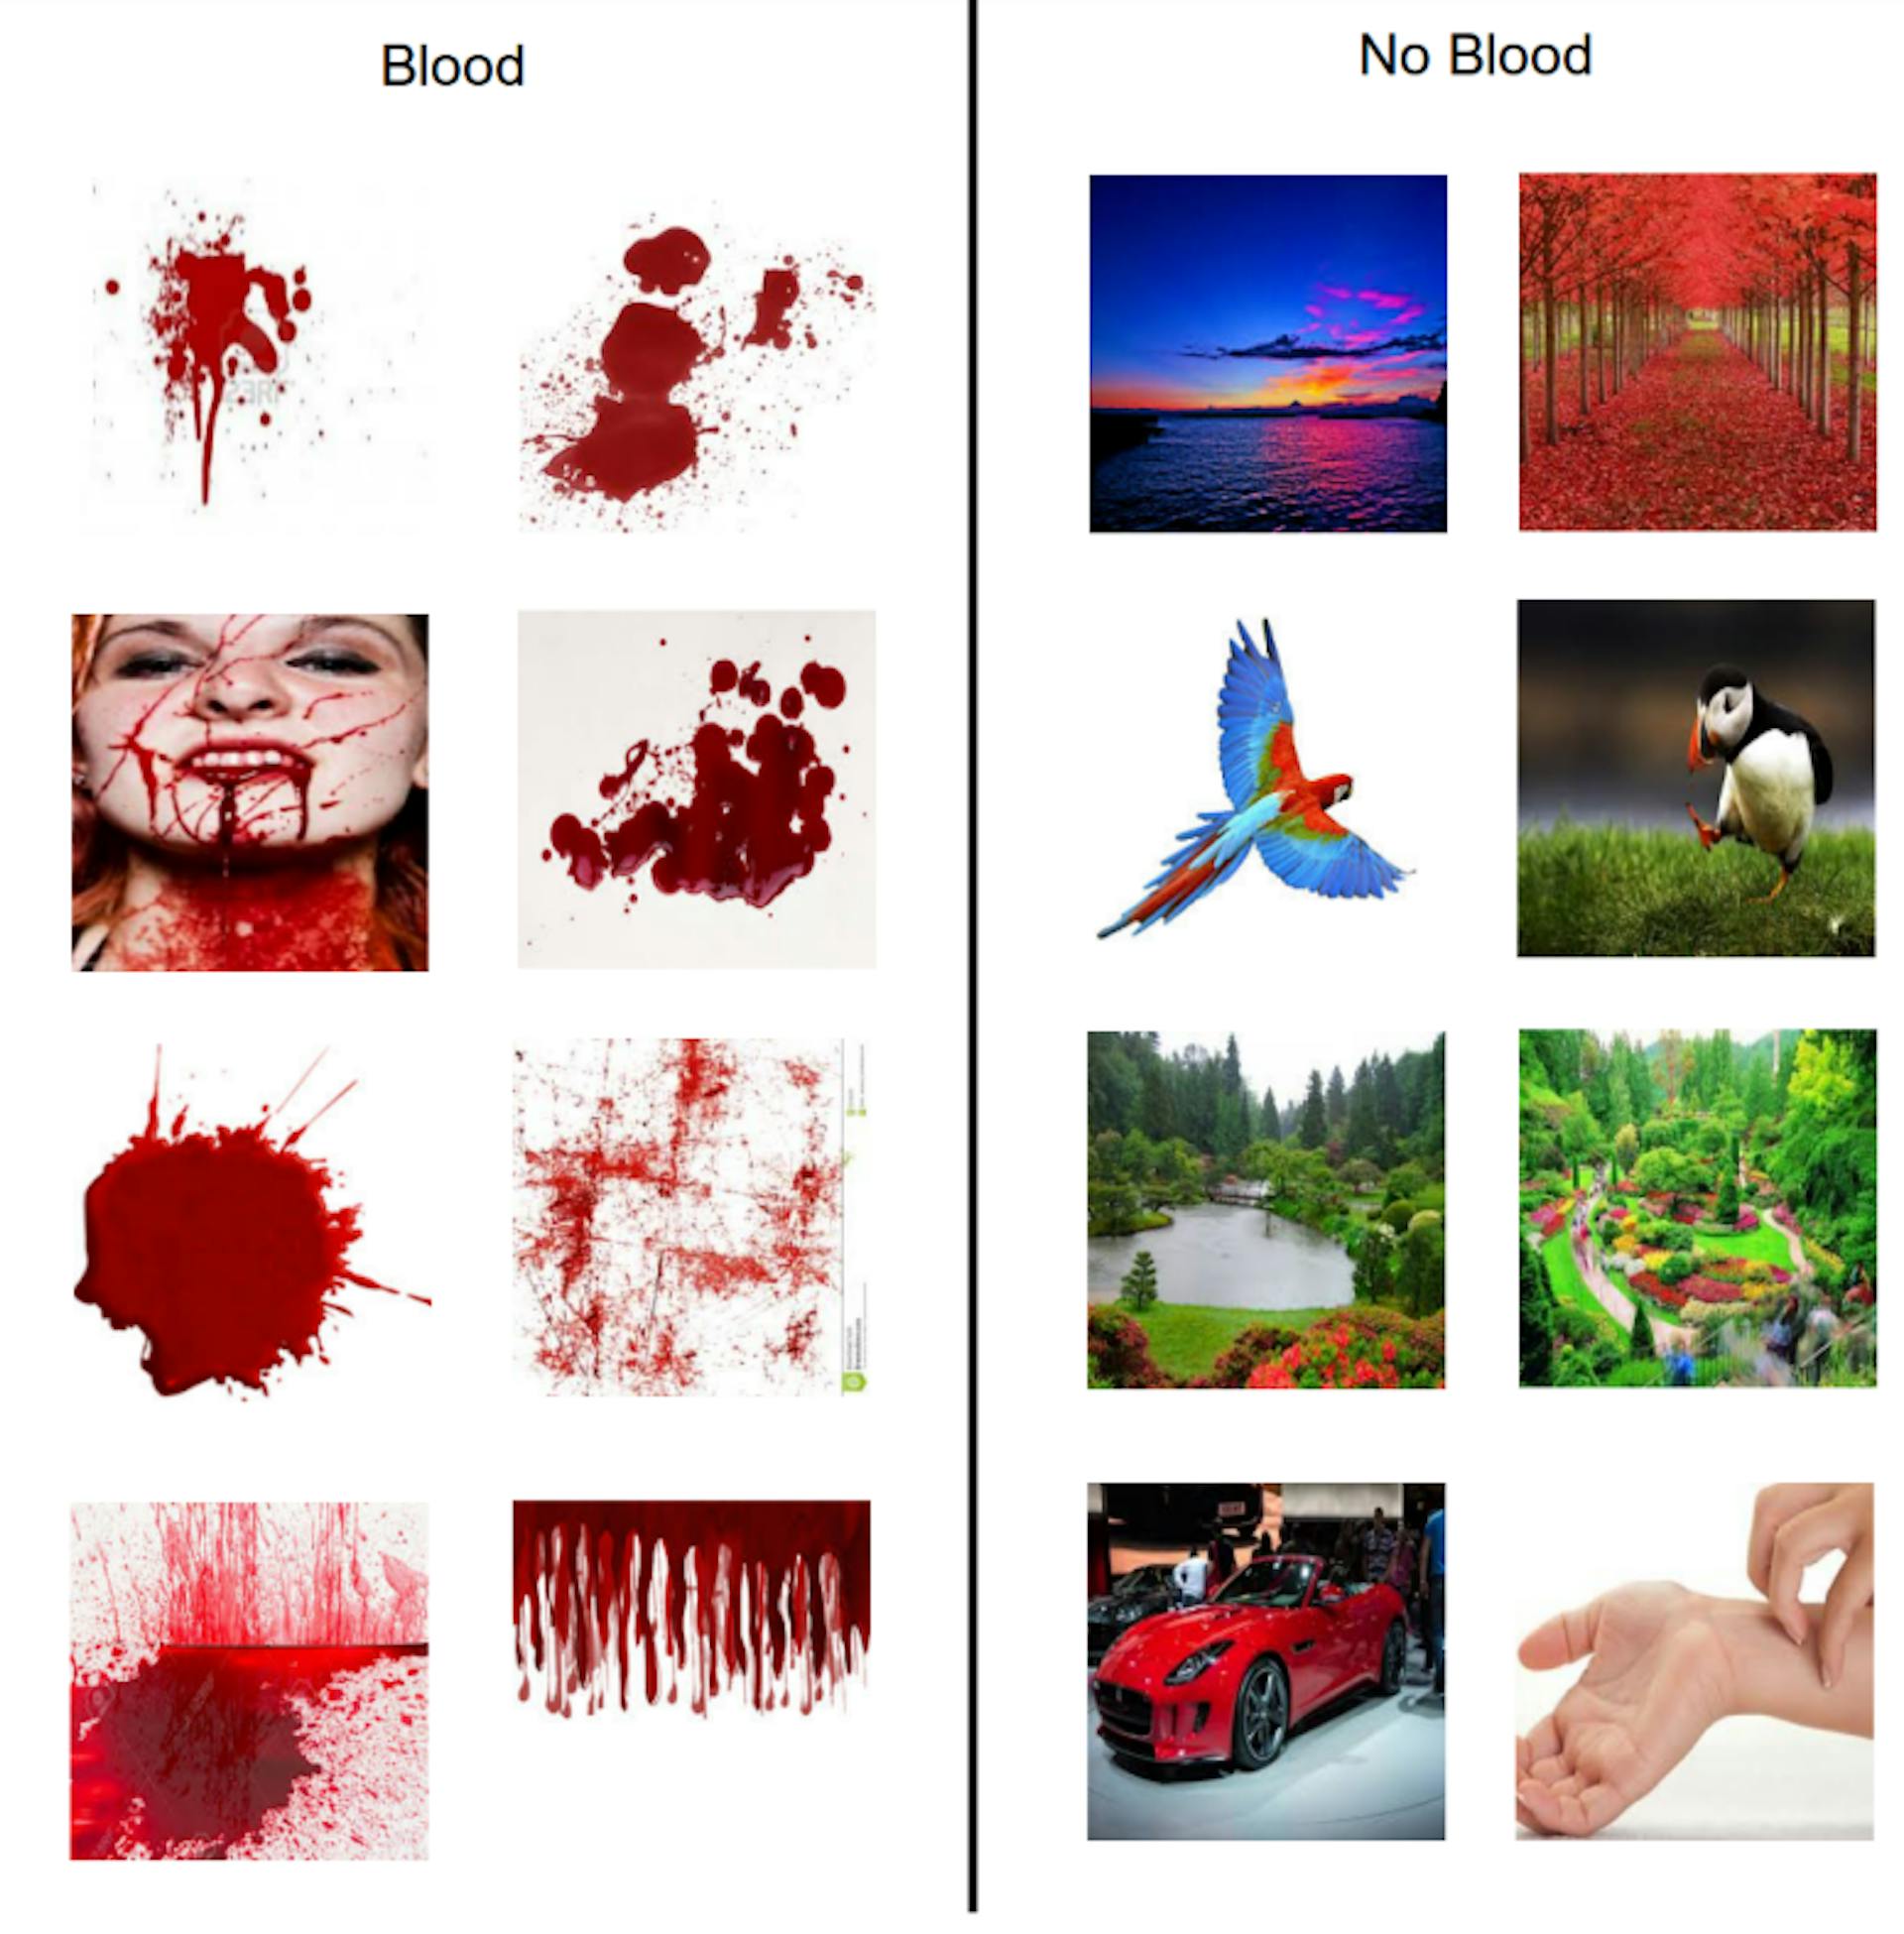 Figura 3.3: Figura mostrando amostras de imagens baixadas do Google para gerar modelos sanguíneos e não sanguíneos.